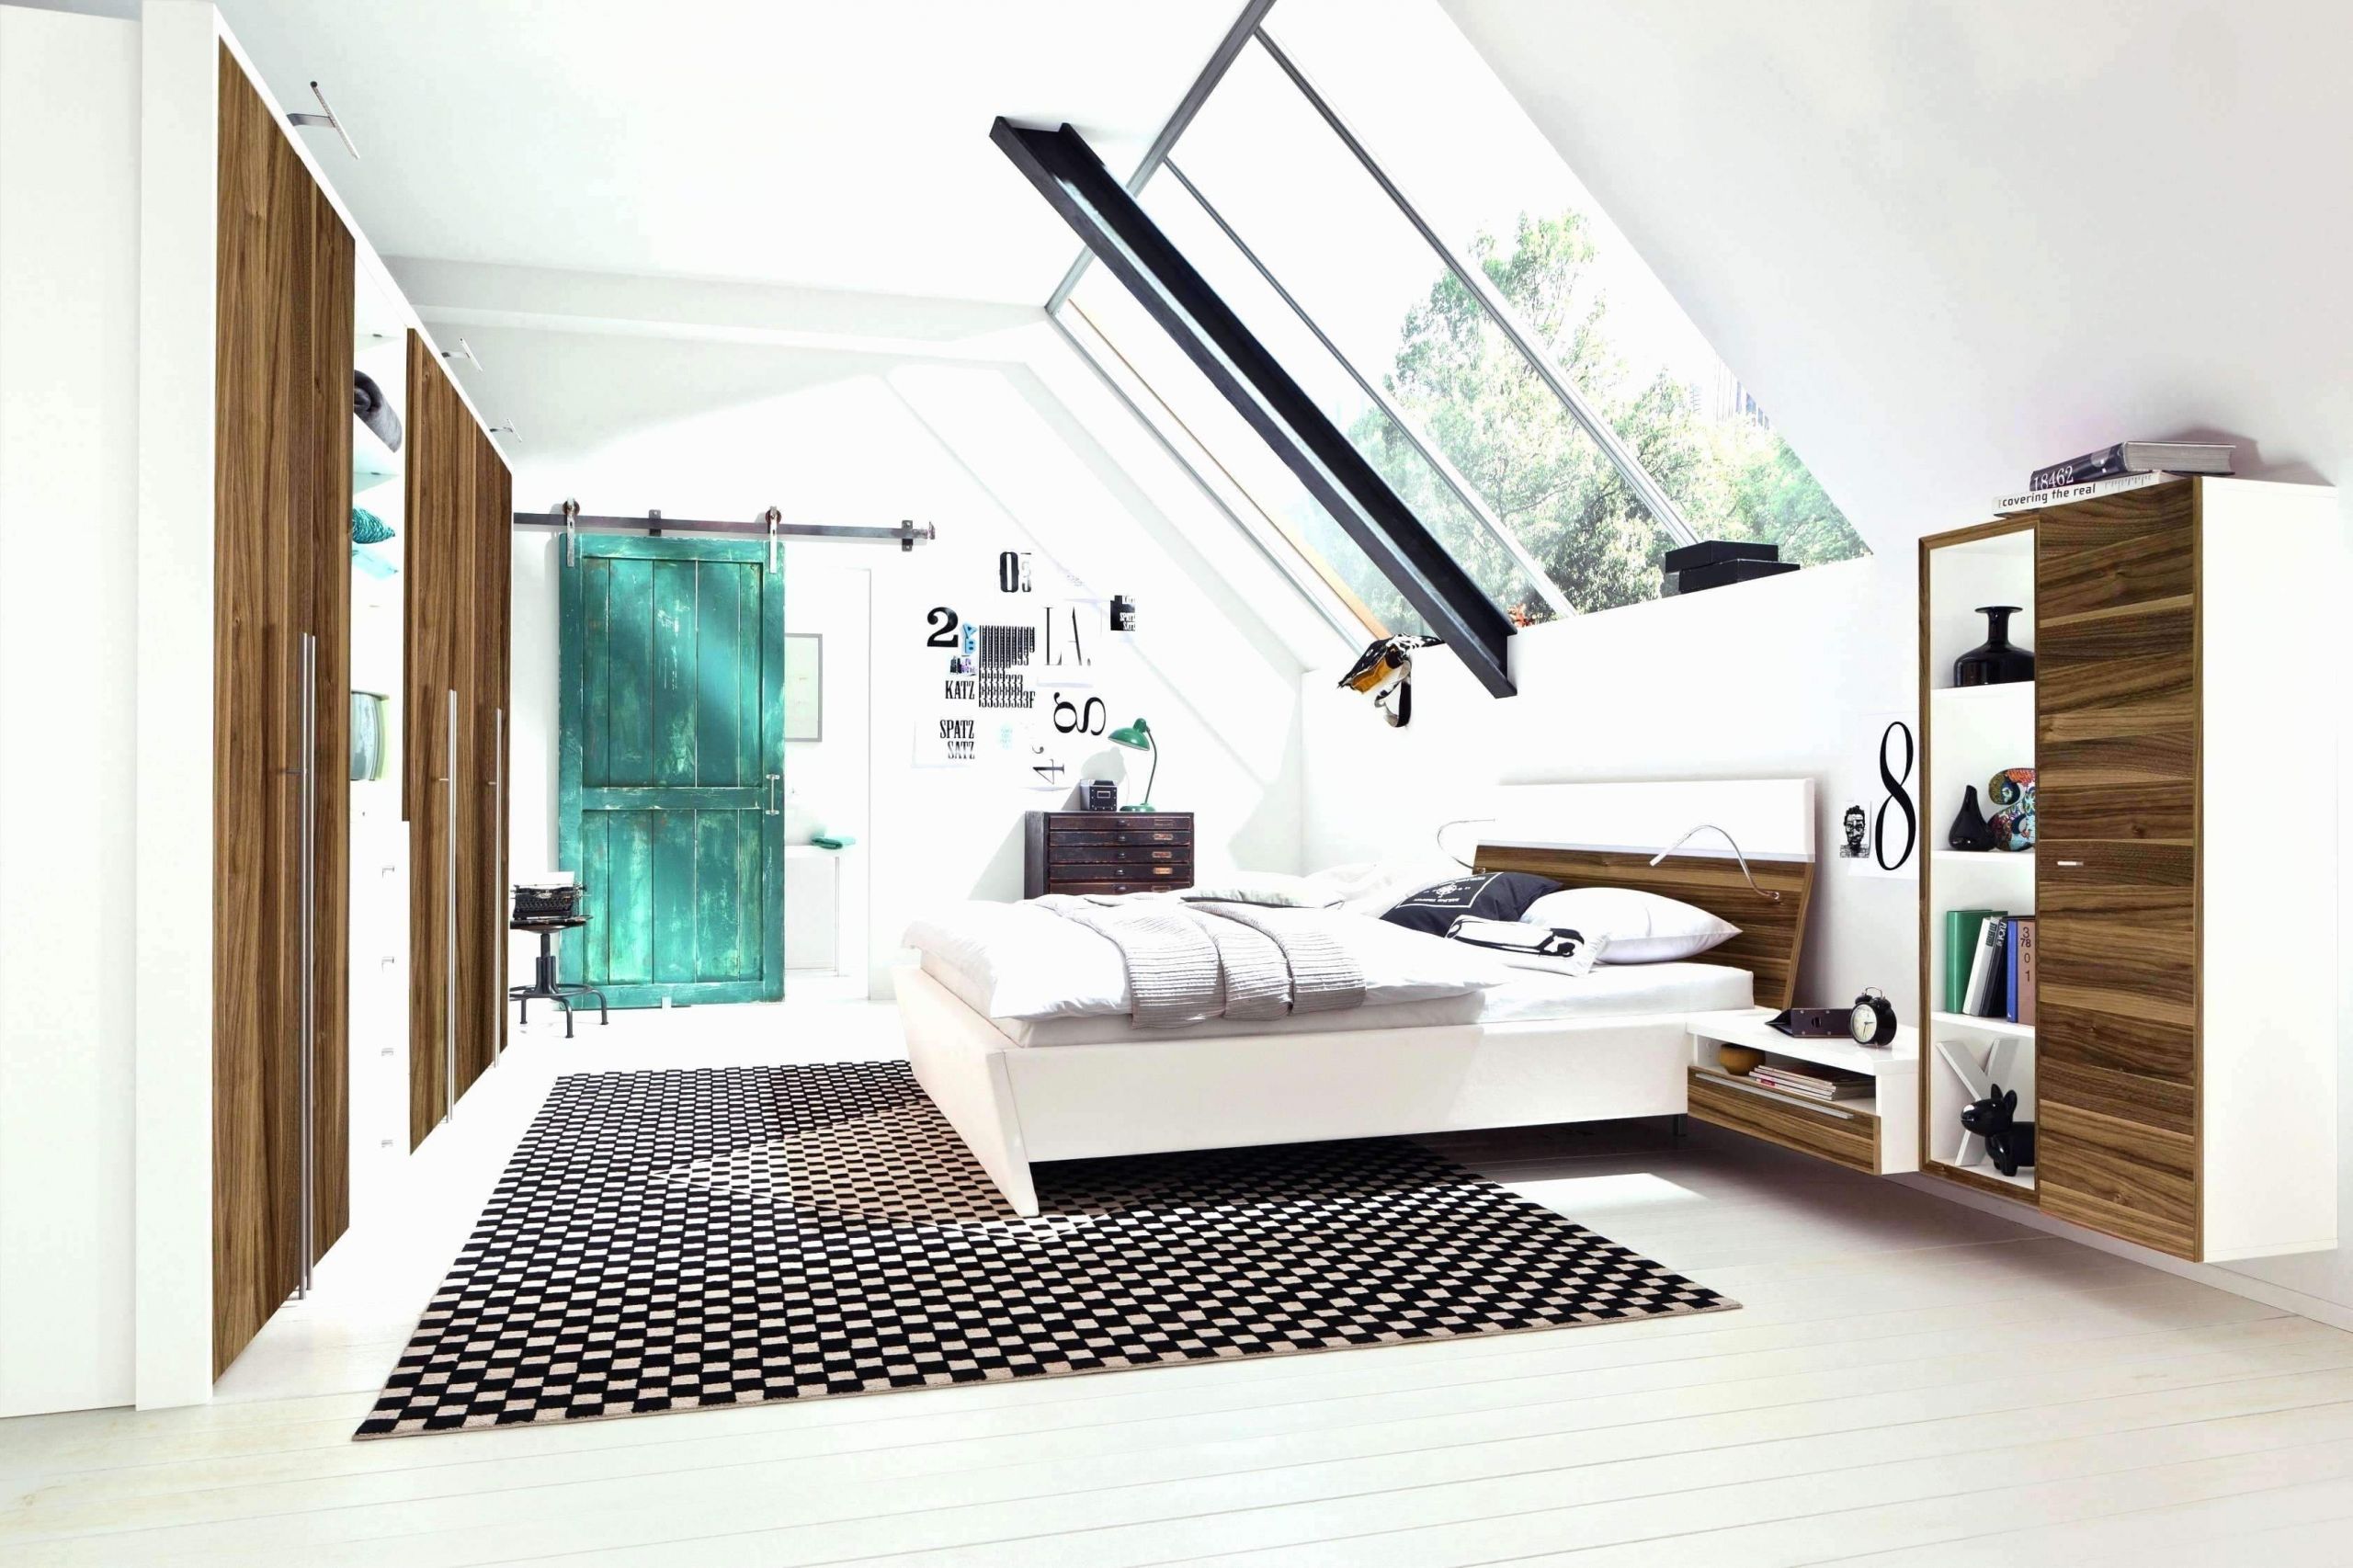 Deko In Grau Luxus 29 Reizend Wohnzimmer Deko Line Shop Inspirierend